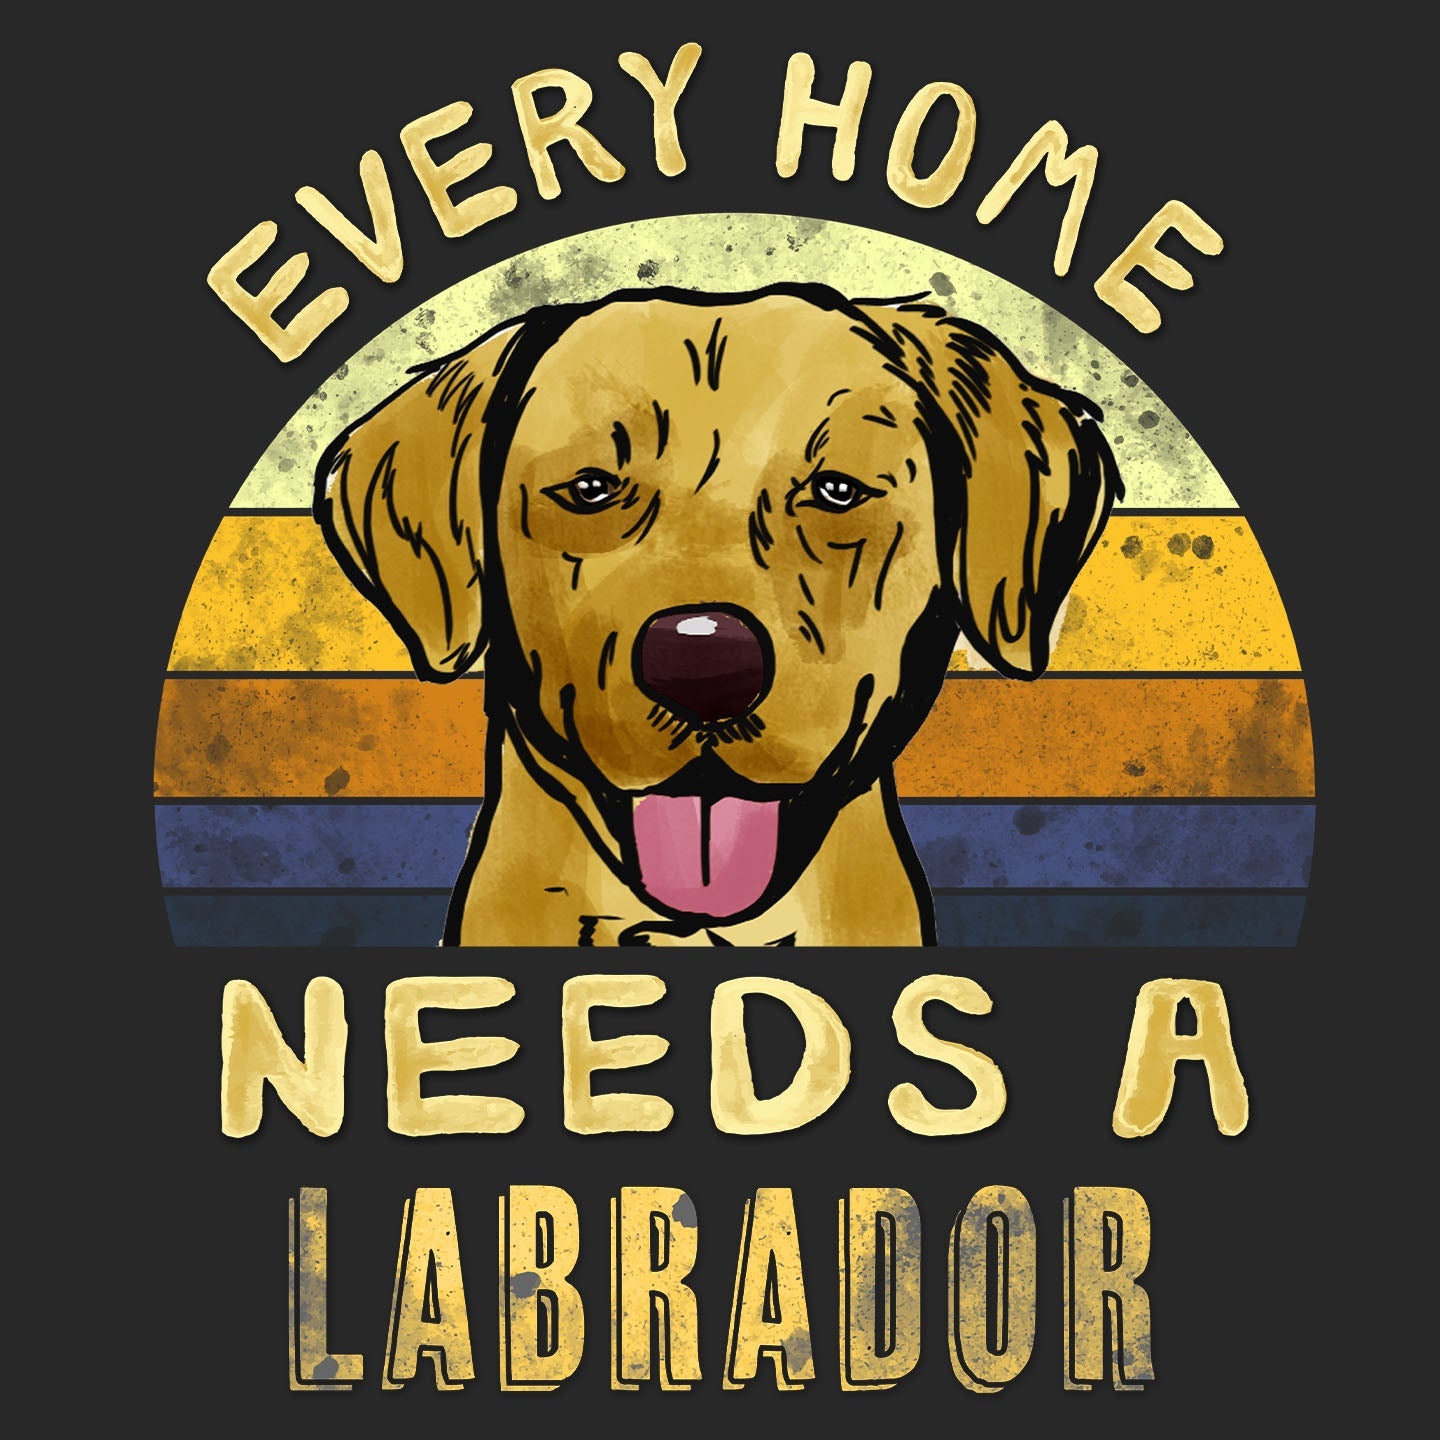 Every Home Needs a Labrador Retriever (Yellow) - Adult Unisex T-Shirt